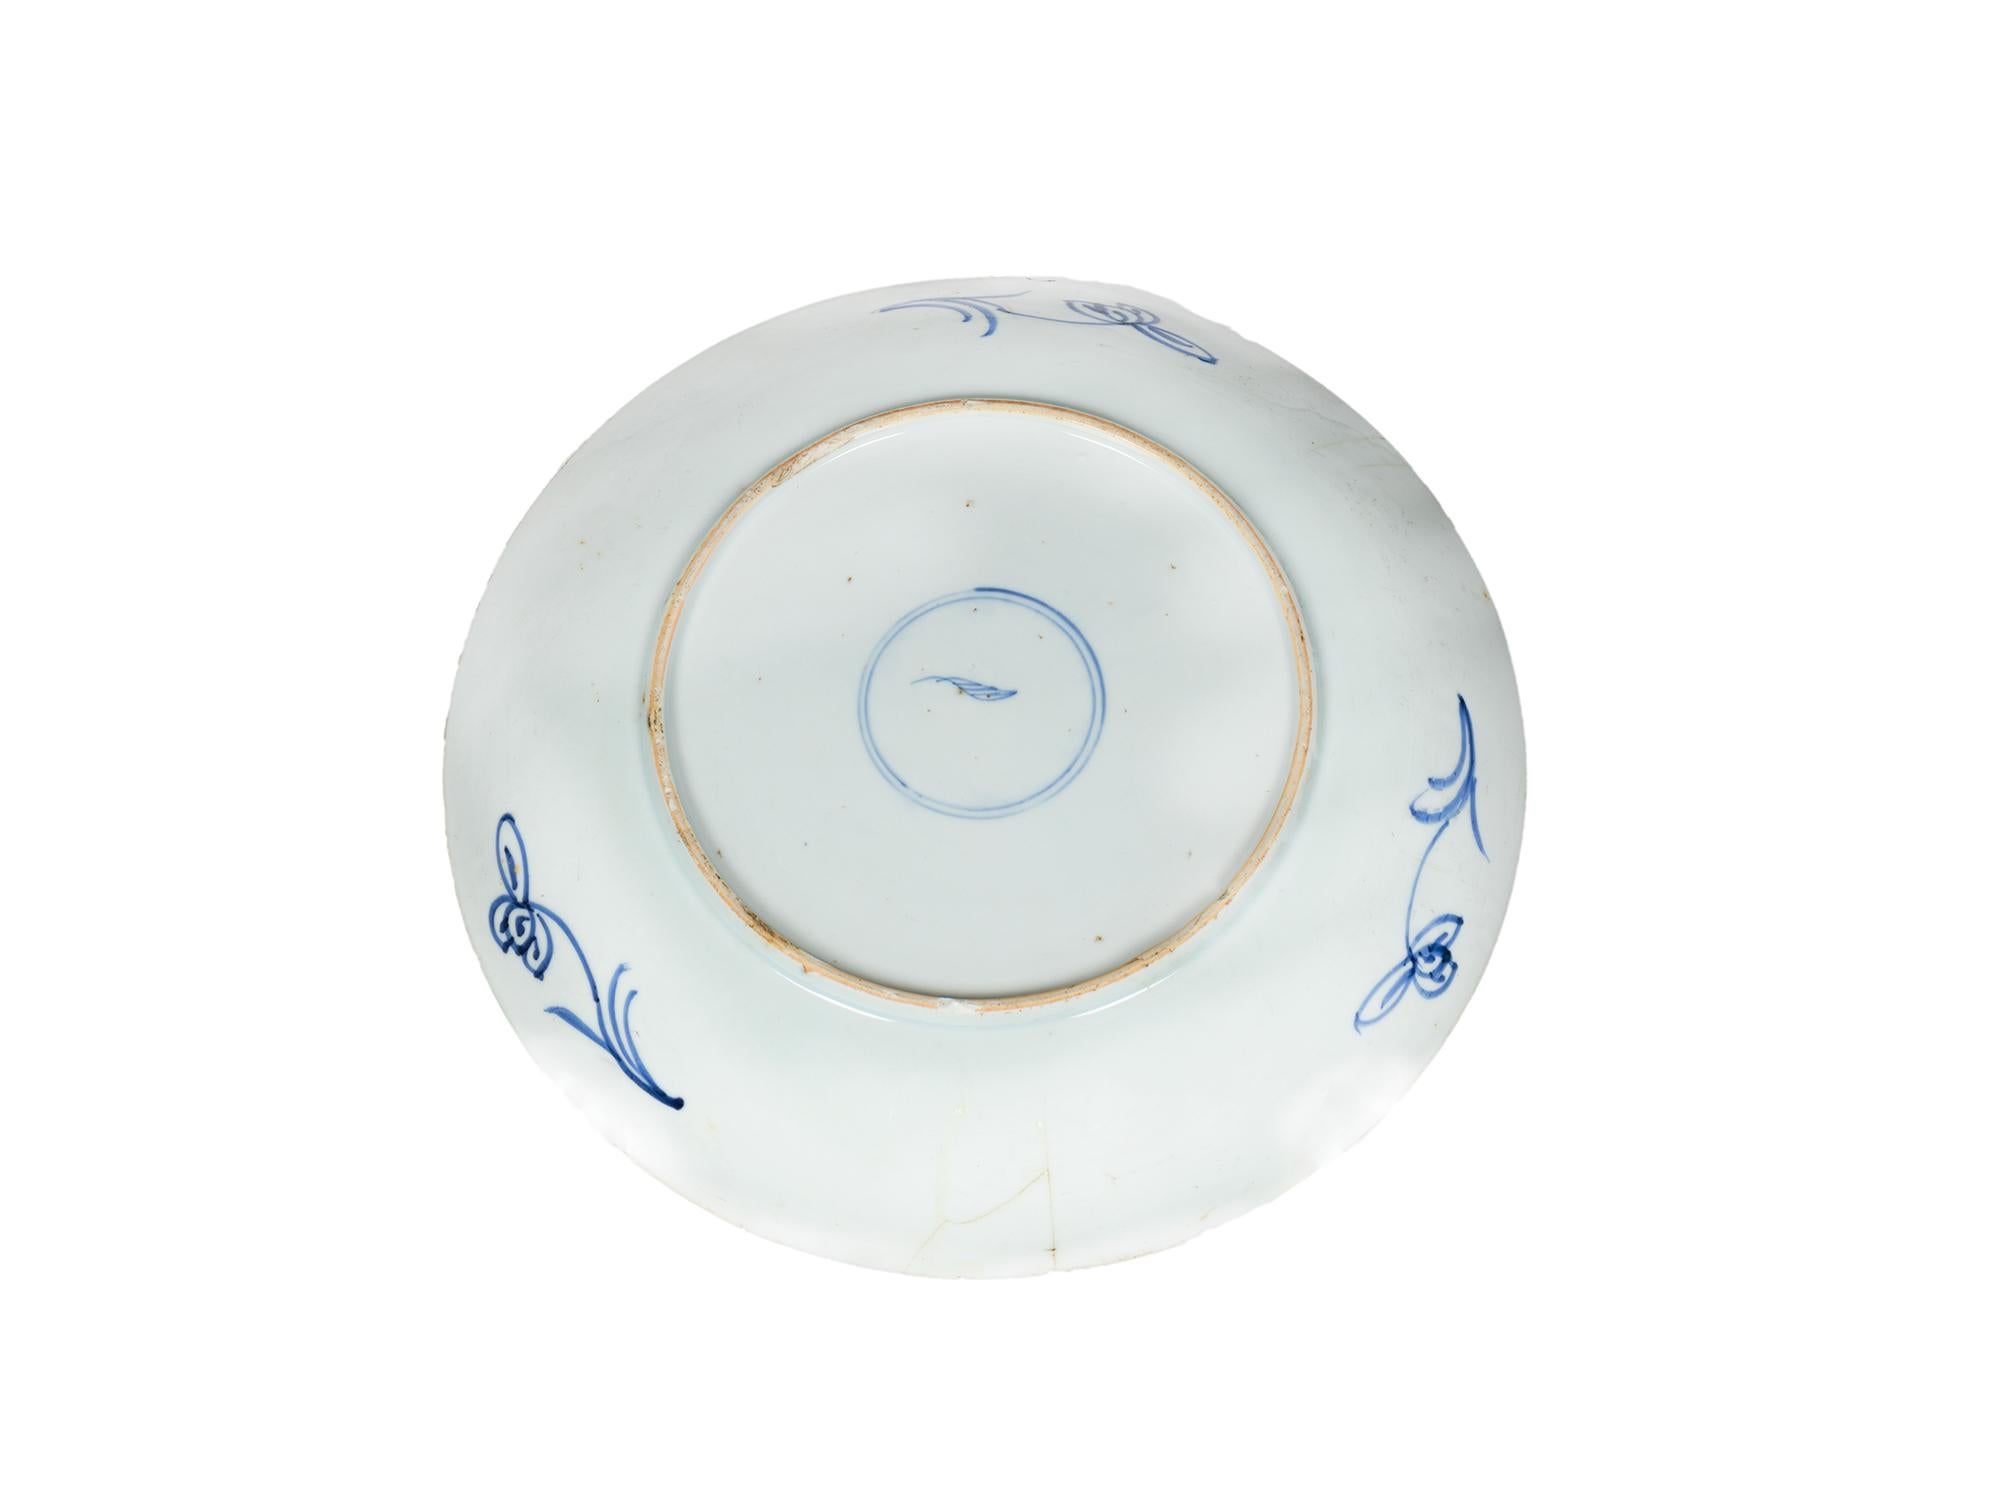 Énorme, rare et authentique assiette ou plat creux en porcelaine chinoise Kangxi du début de la période Kangxi du XVIIe siècle, décorée à la main de fleurs sur le dessous du bord et peinte à la main en bleu et blanc de Canton avec le motif de fleurs